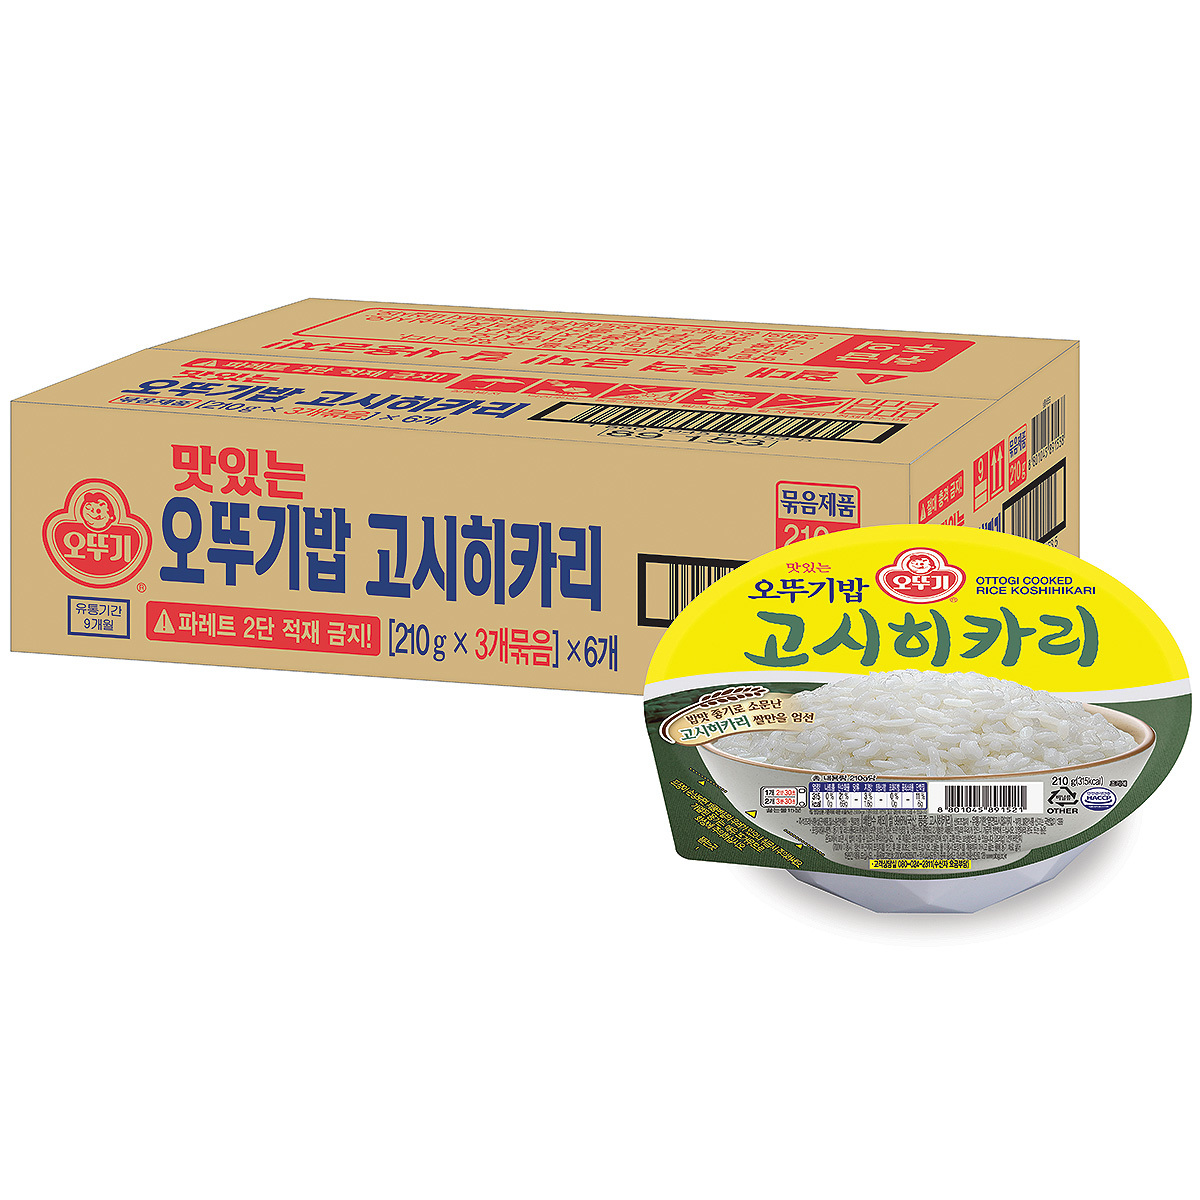 오뚜기 맛있는 오뚜기밥 고시히카리 210g x 18개